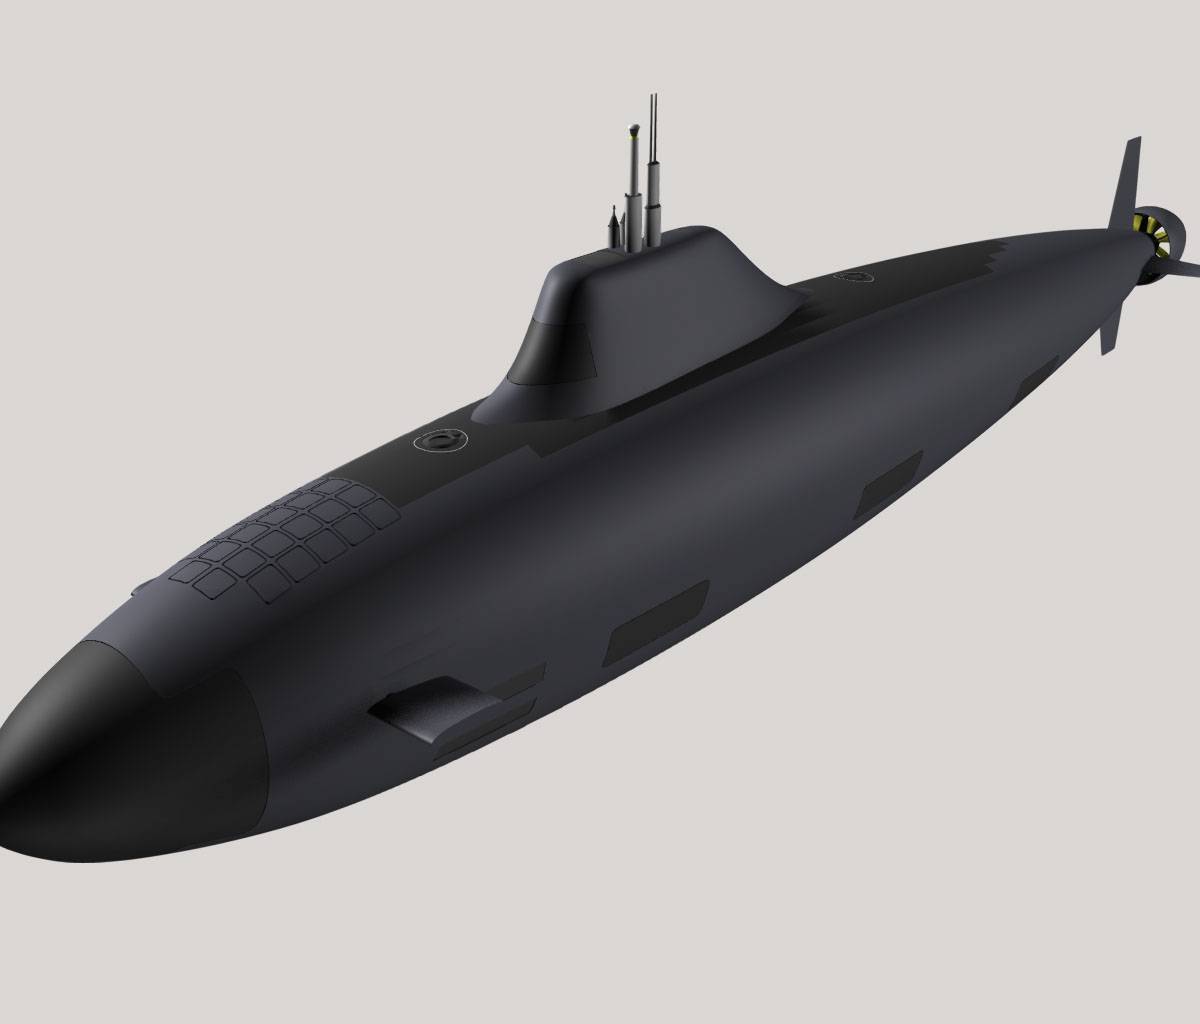 NI о новом проекте АПЛ «Хаски» ВМФ РФ: флот США ждут большие проблемы